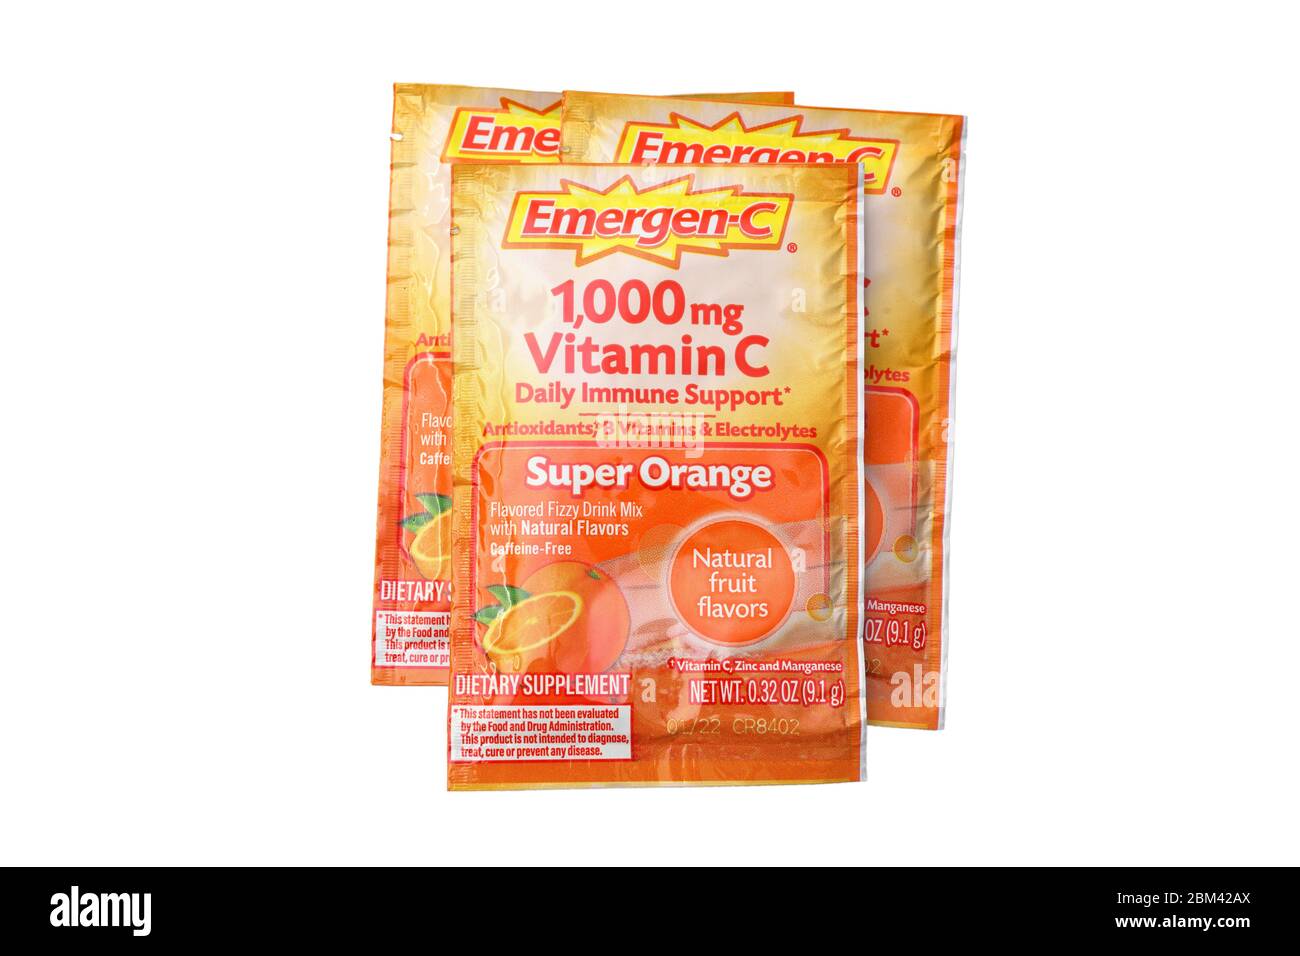 Pacchetti di 1000mg Emergen-C vitamina C supplemento dietetico isolato su uno sfondo bianco. Immagine ritagliata per l'illustrazione e l'uso editoriale. Foto Stock